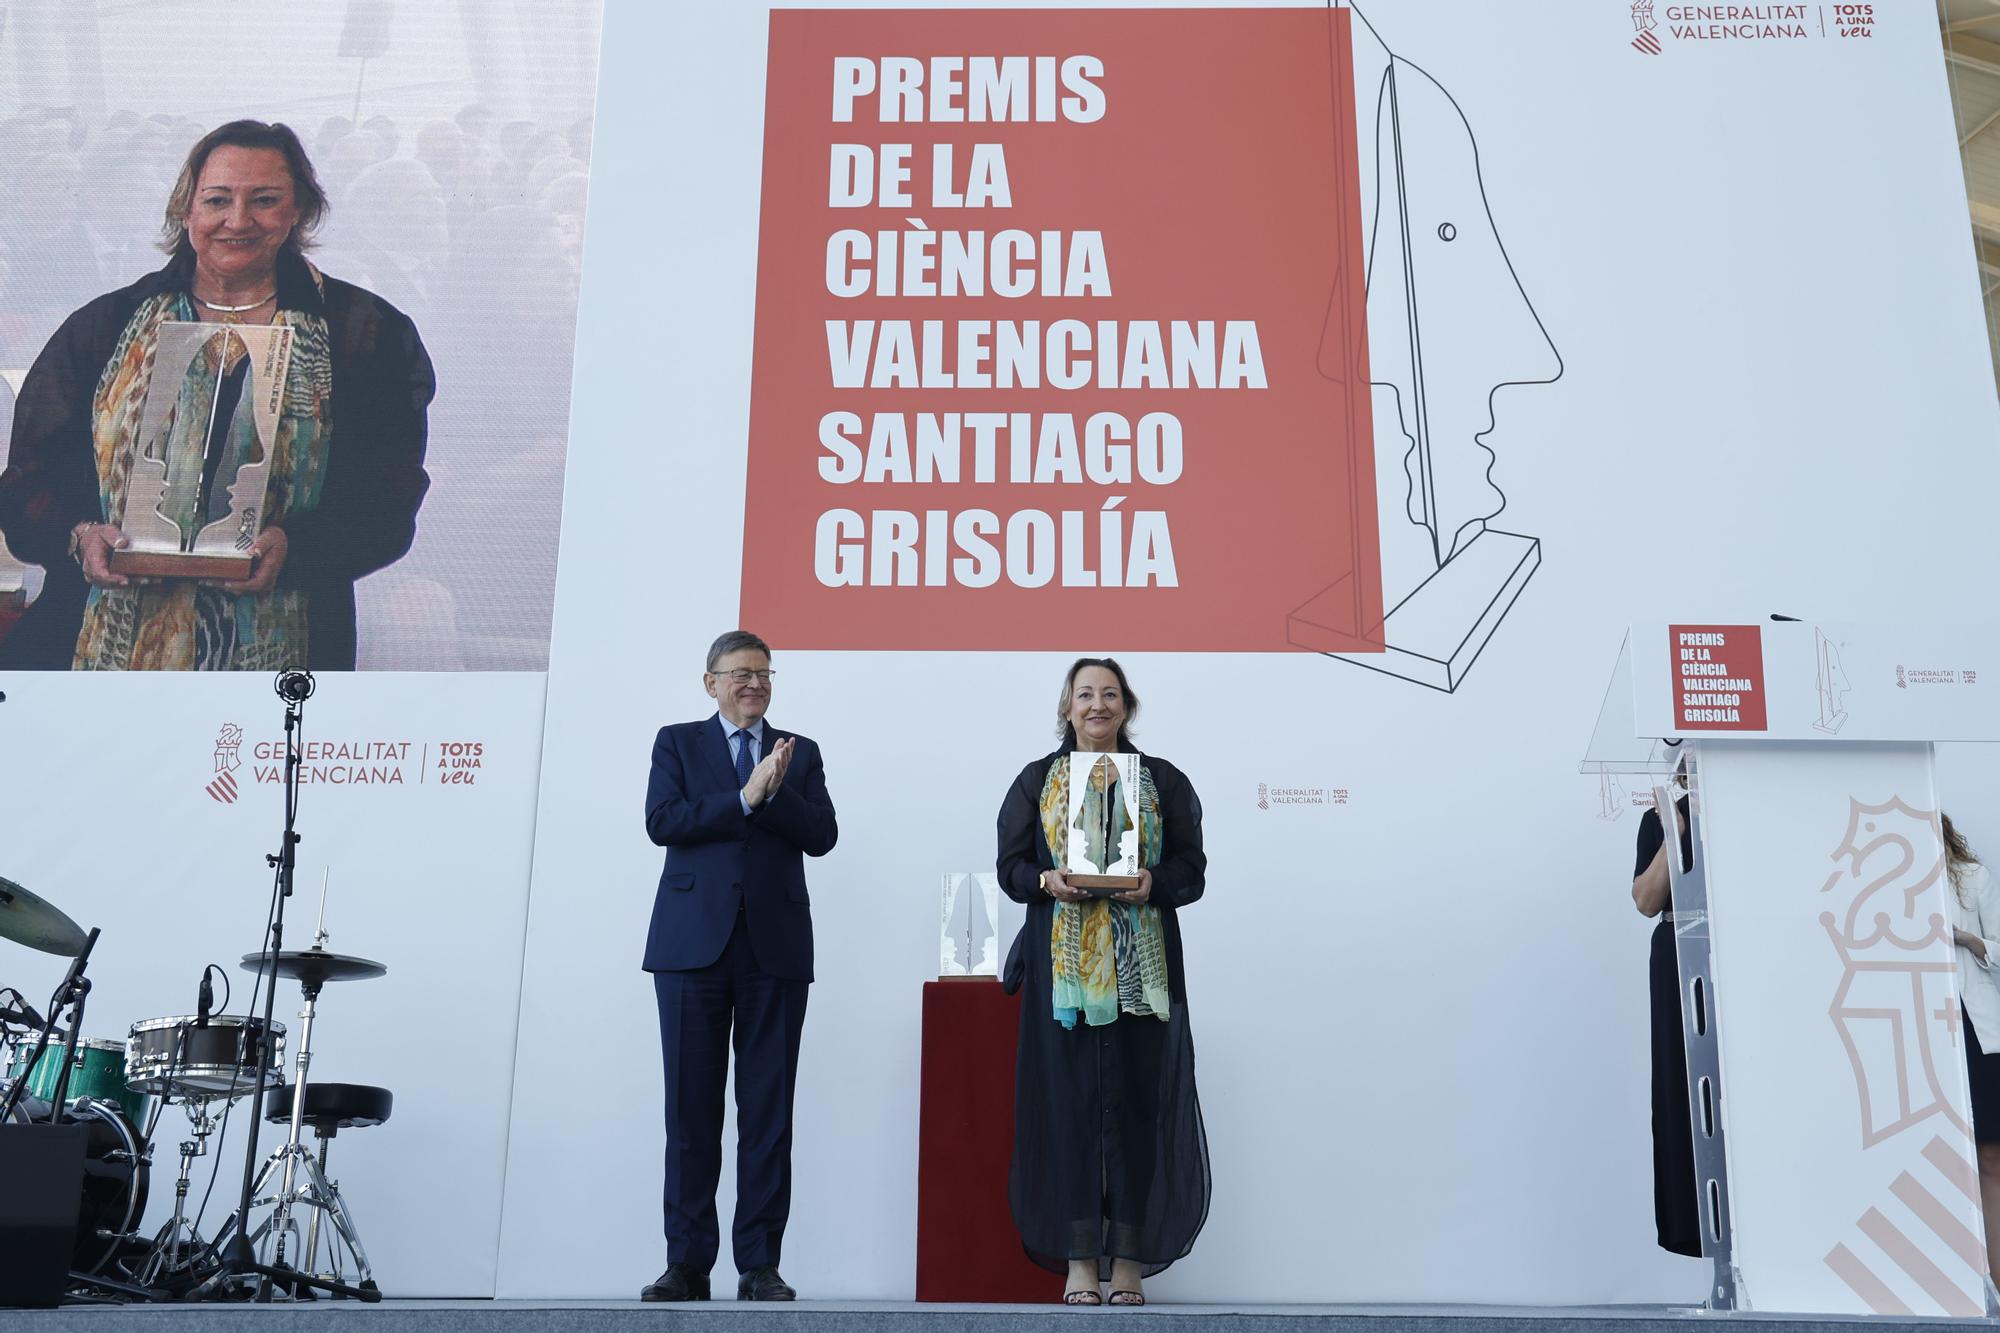 I Premios de la Ciencia Valenciana Santiago Grisolía